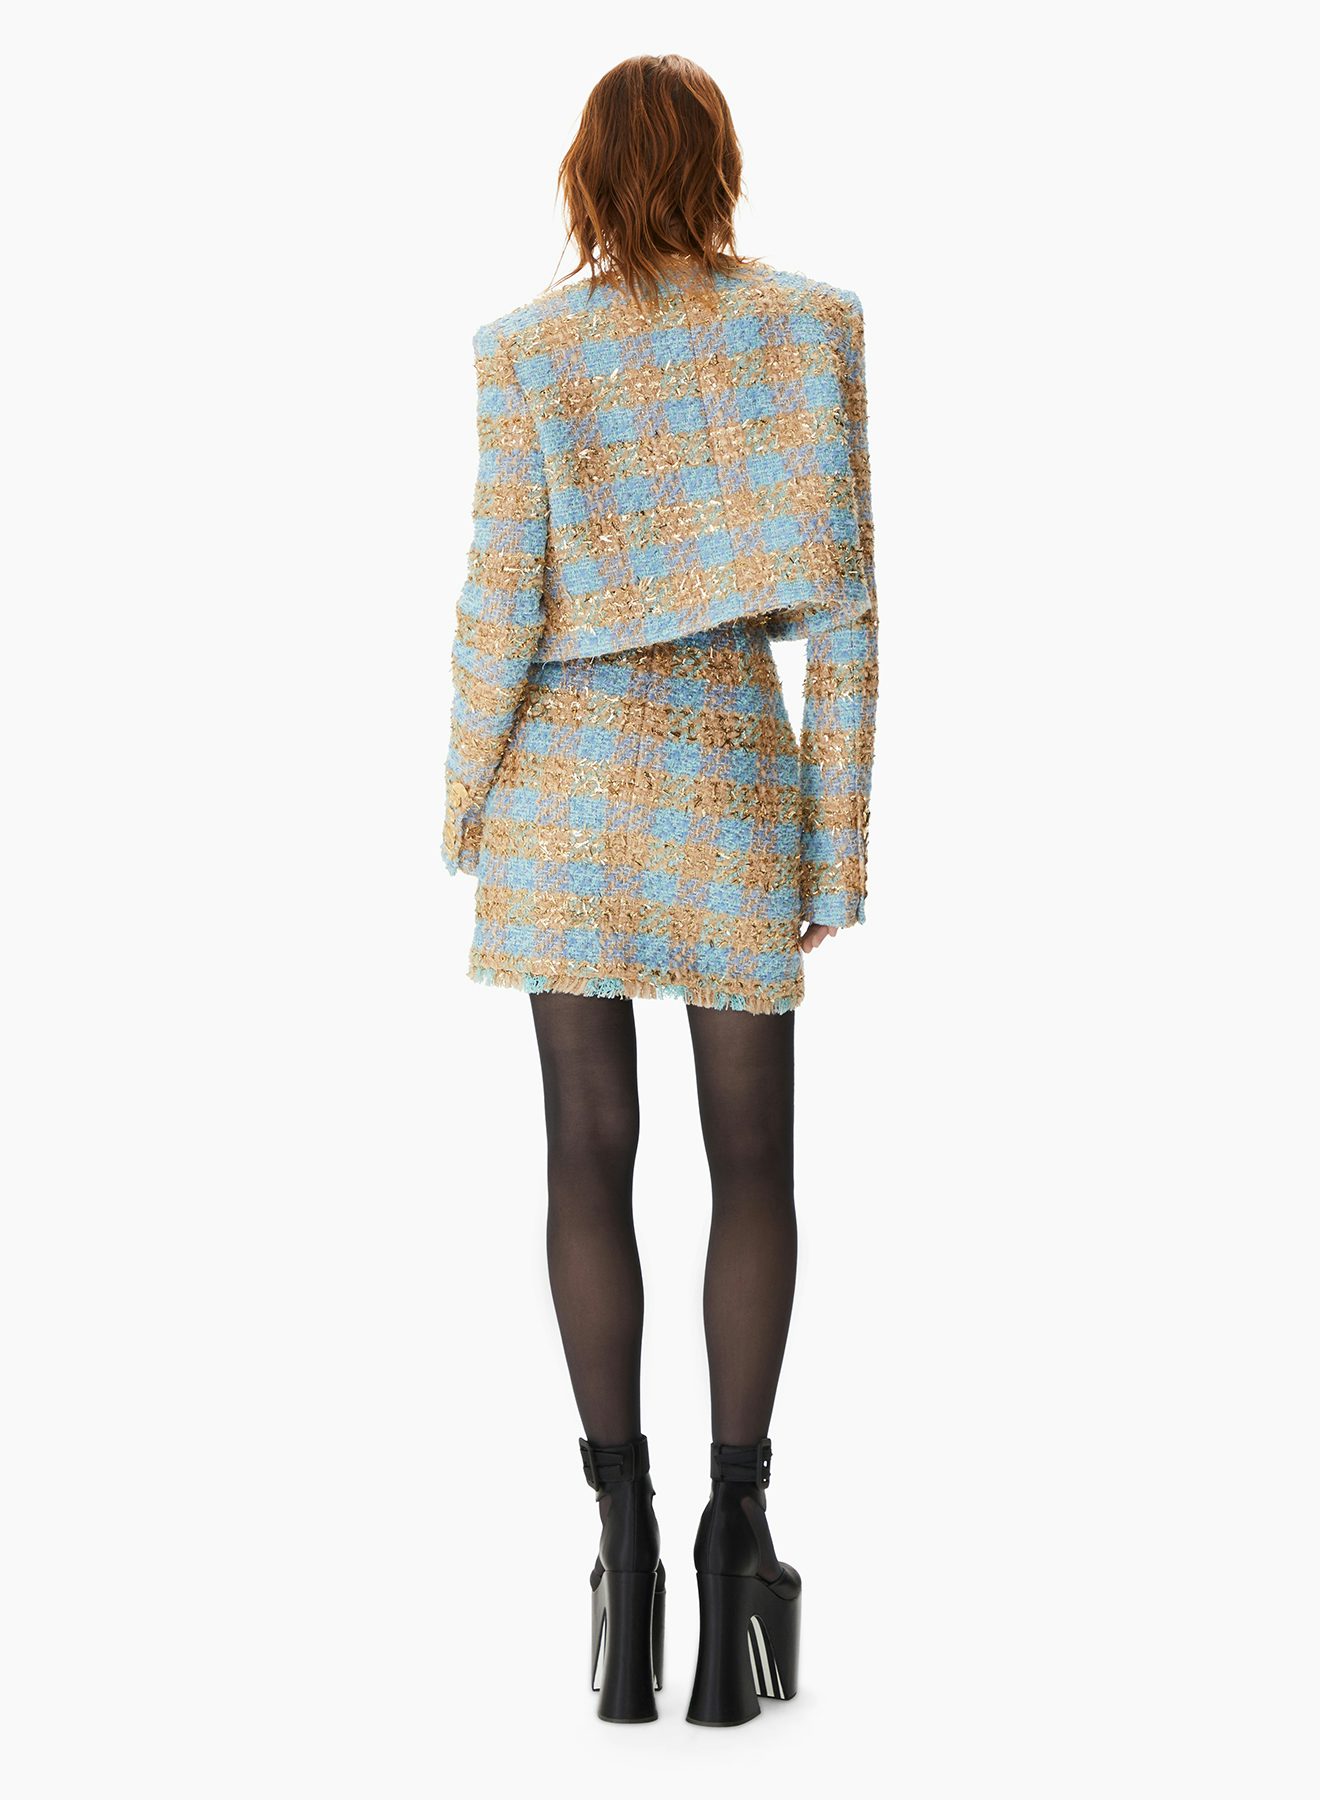 Minifalda Trapezoidal De Tweed Oro Azul  - Nina Ricci